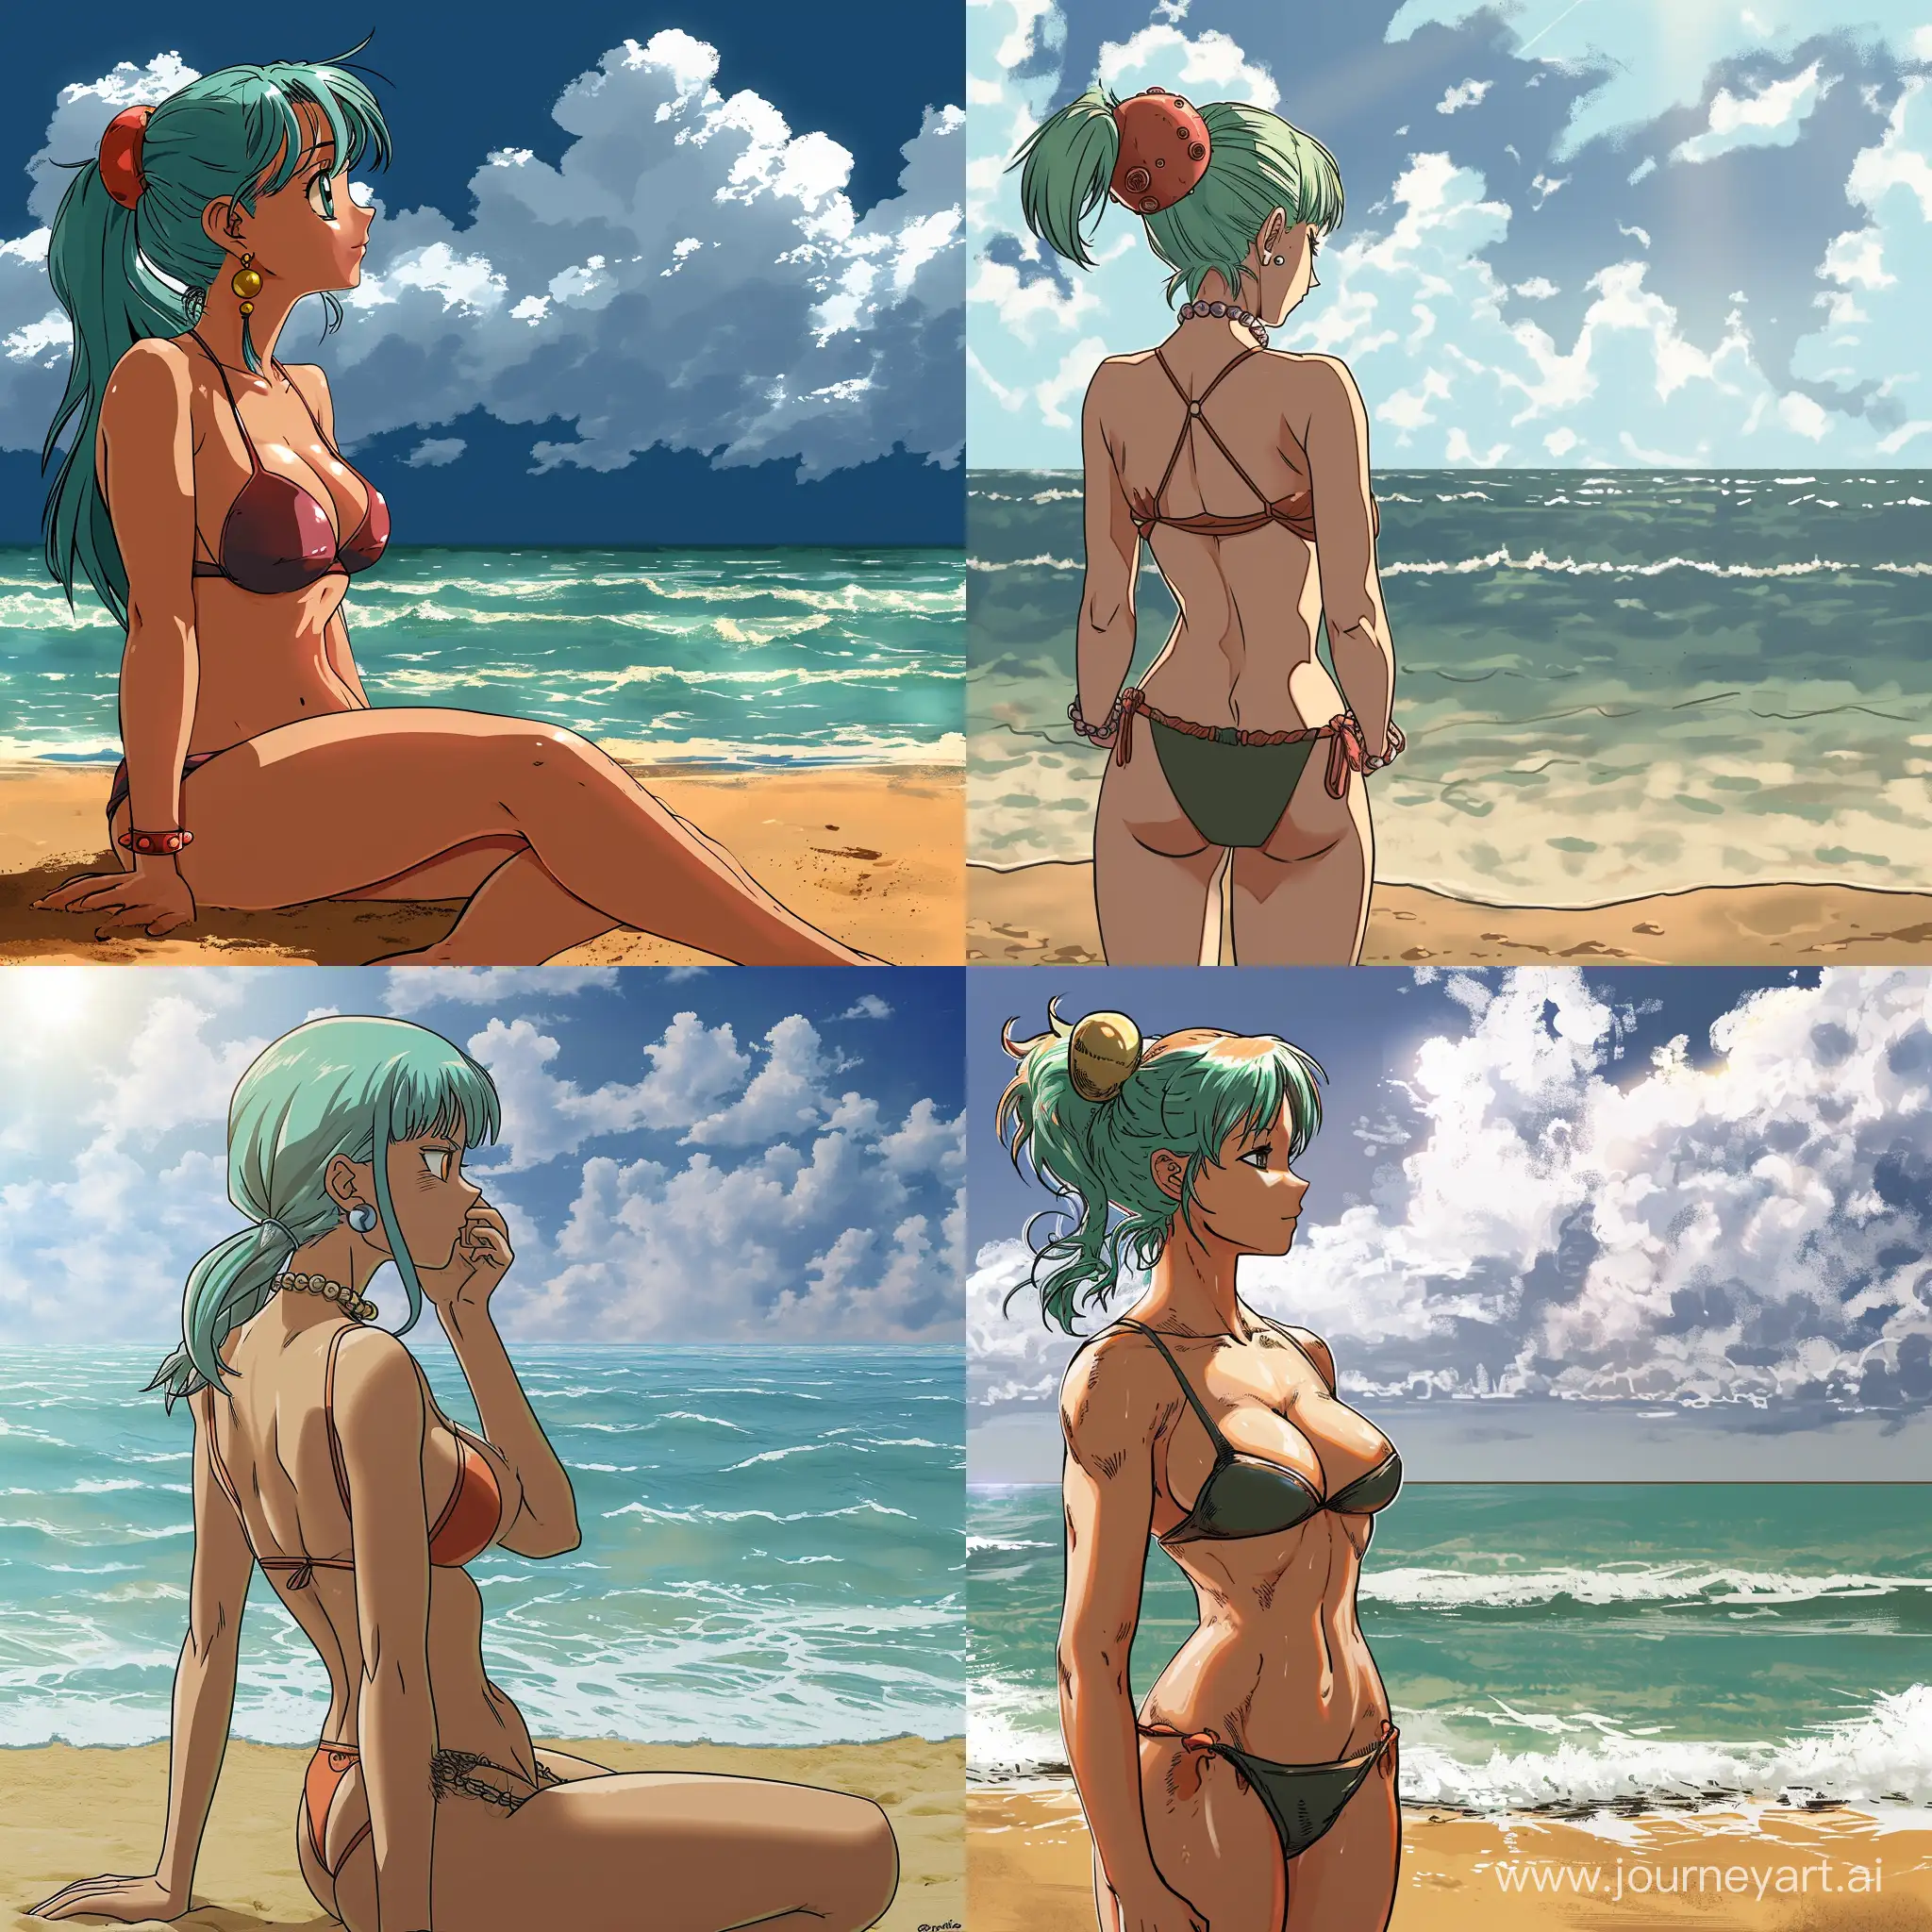 bulma watching the sea in the beach in a bikini